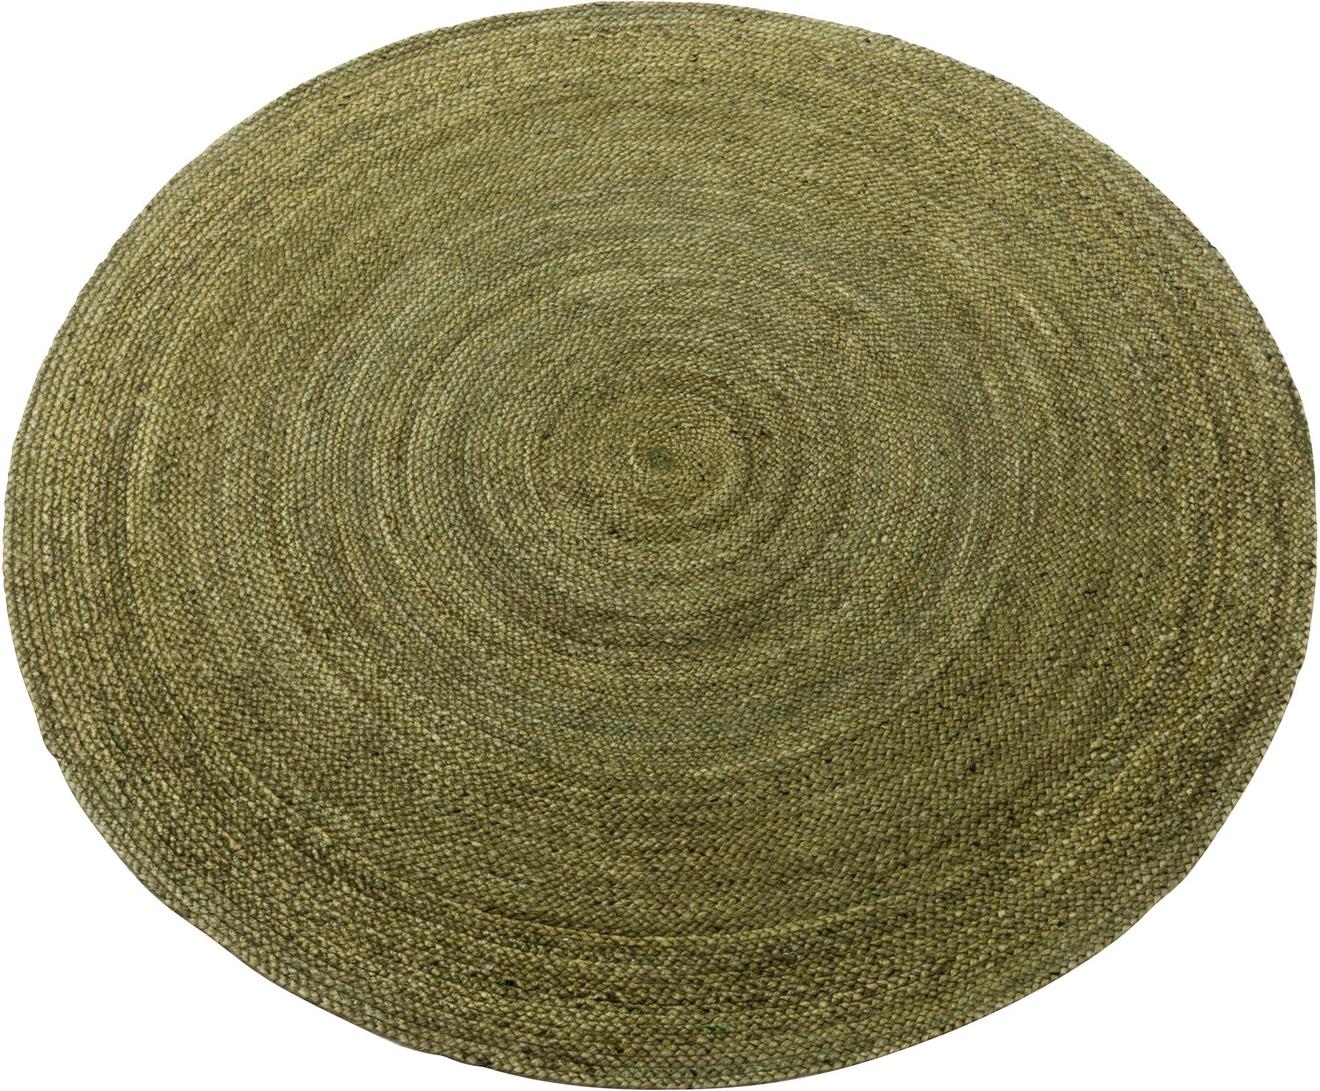 Kallio juuttimatto pyöreä ⌀ 160 cm, vihreä tuote hintaan 69€ liikkeestä MASKU